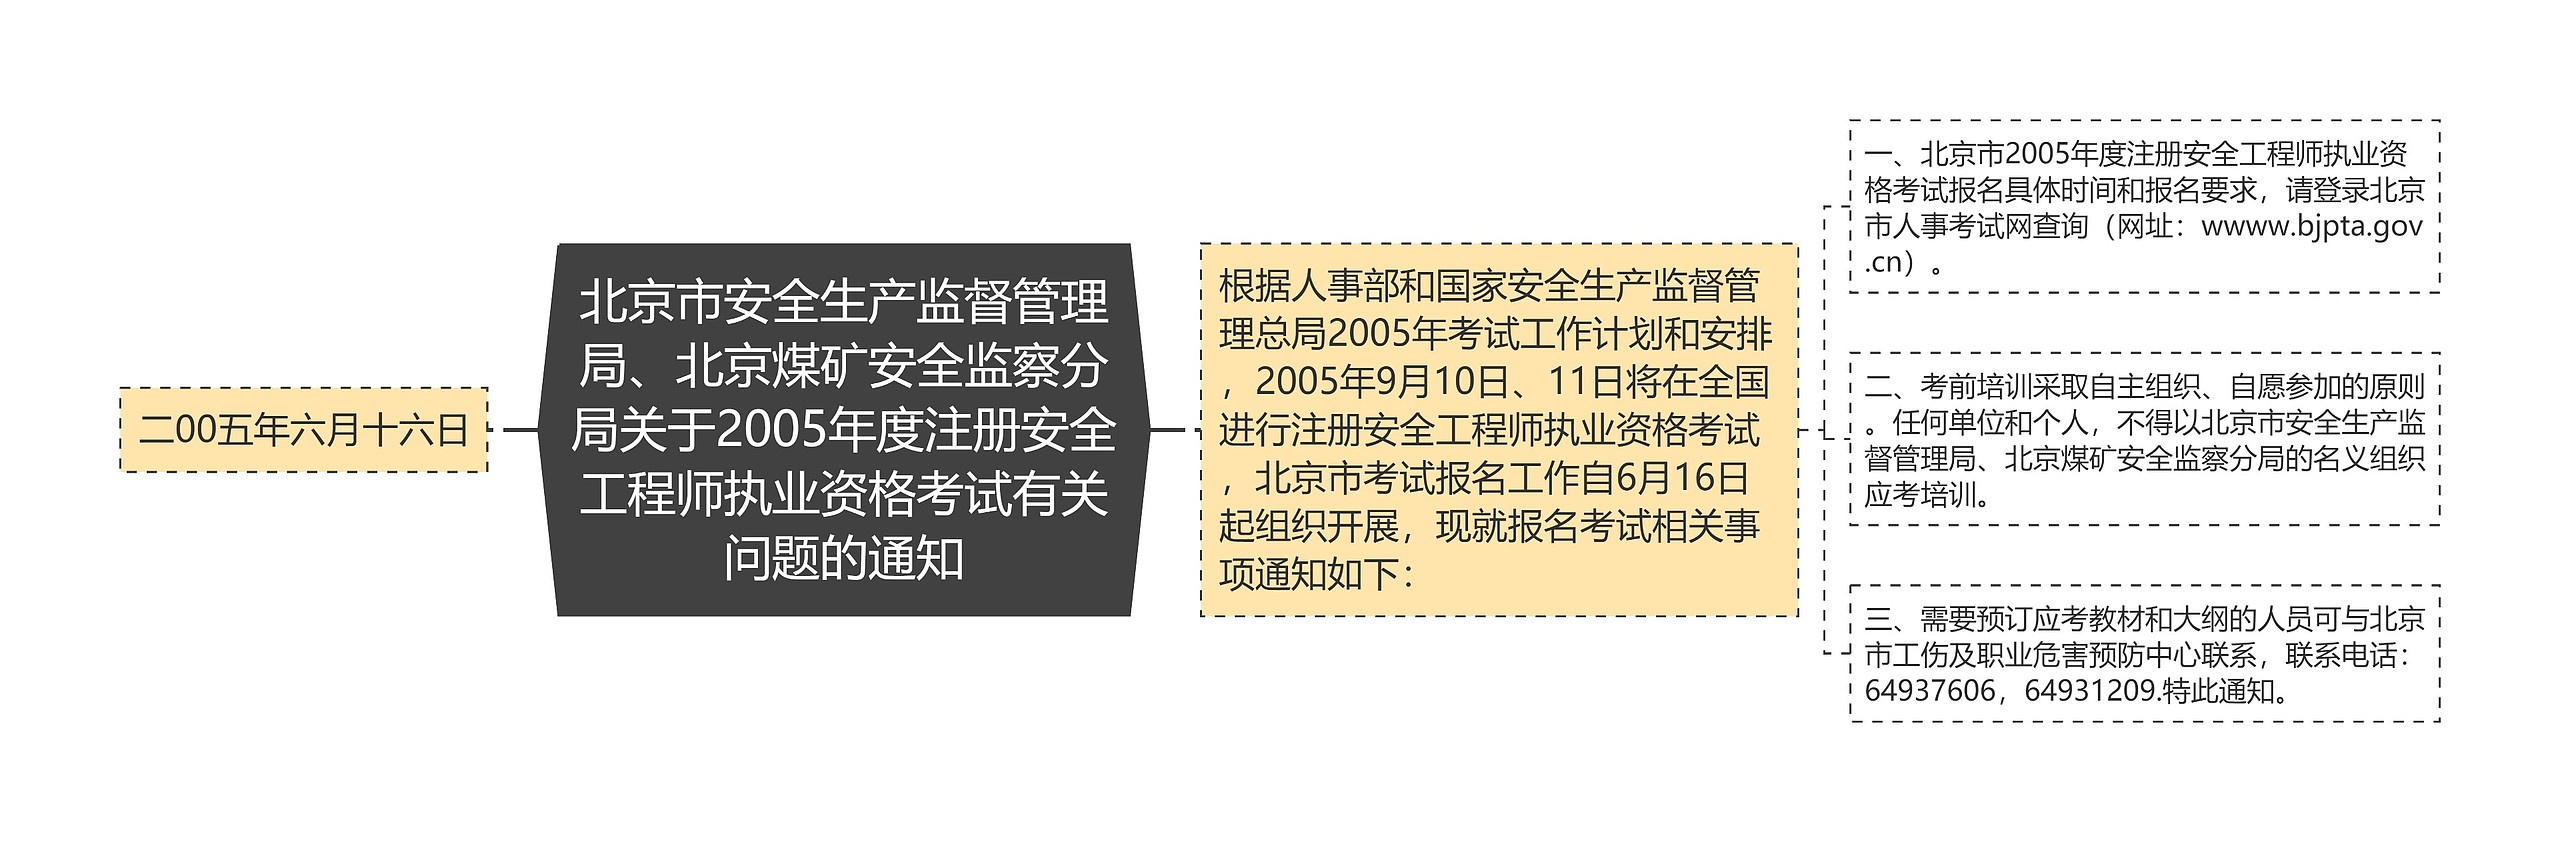 北京市安全生产监督管理局、北京煤矿安全监察分局关于2005年度注册安全工程师执业资格考试有关问题的通知思维导图